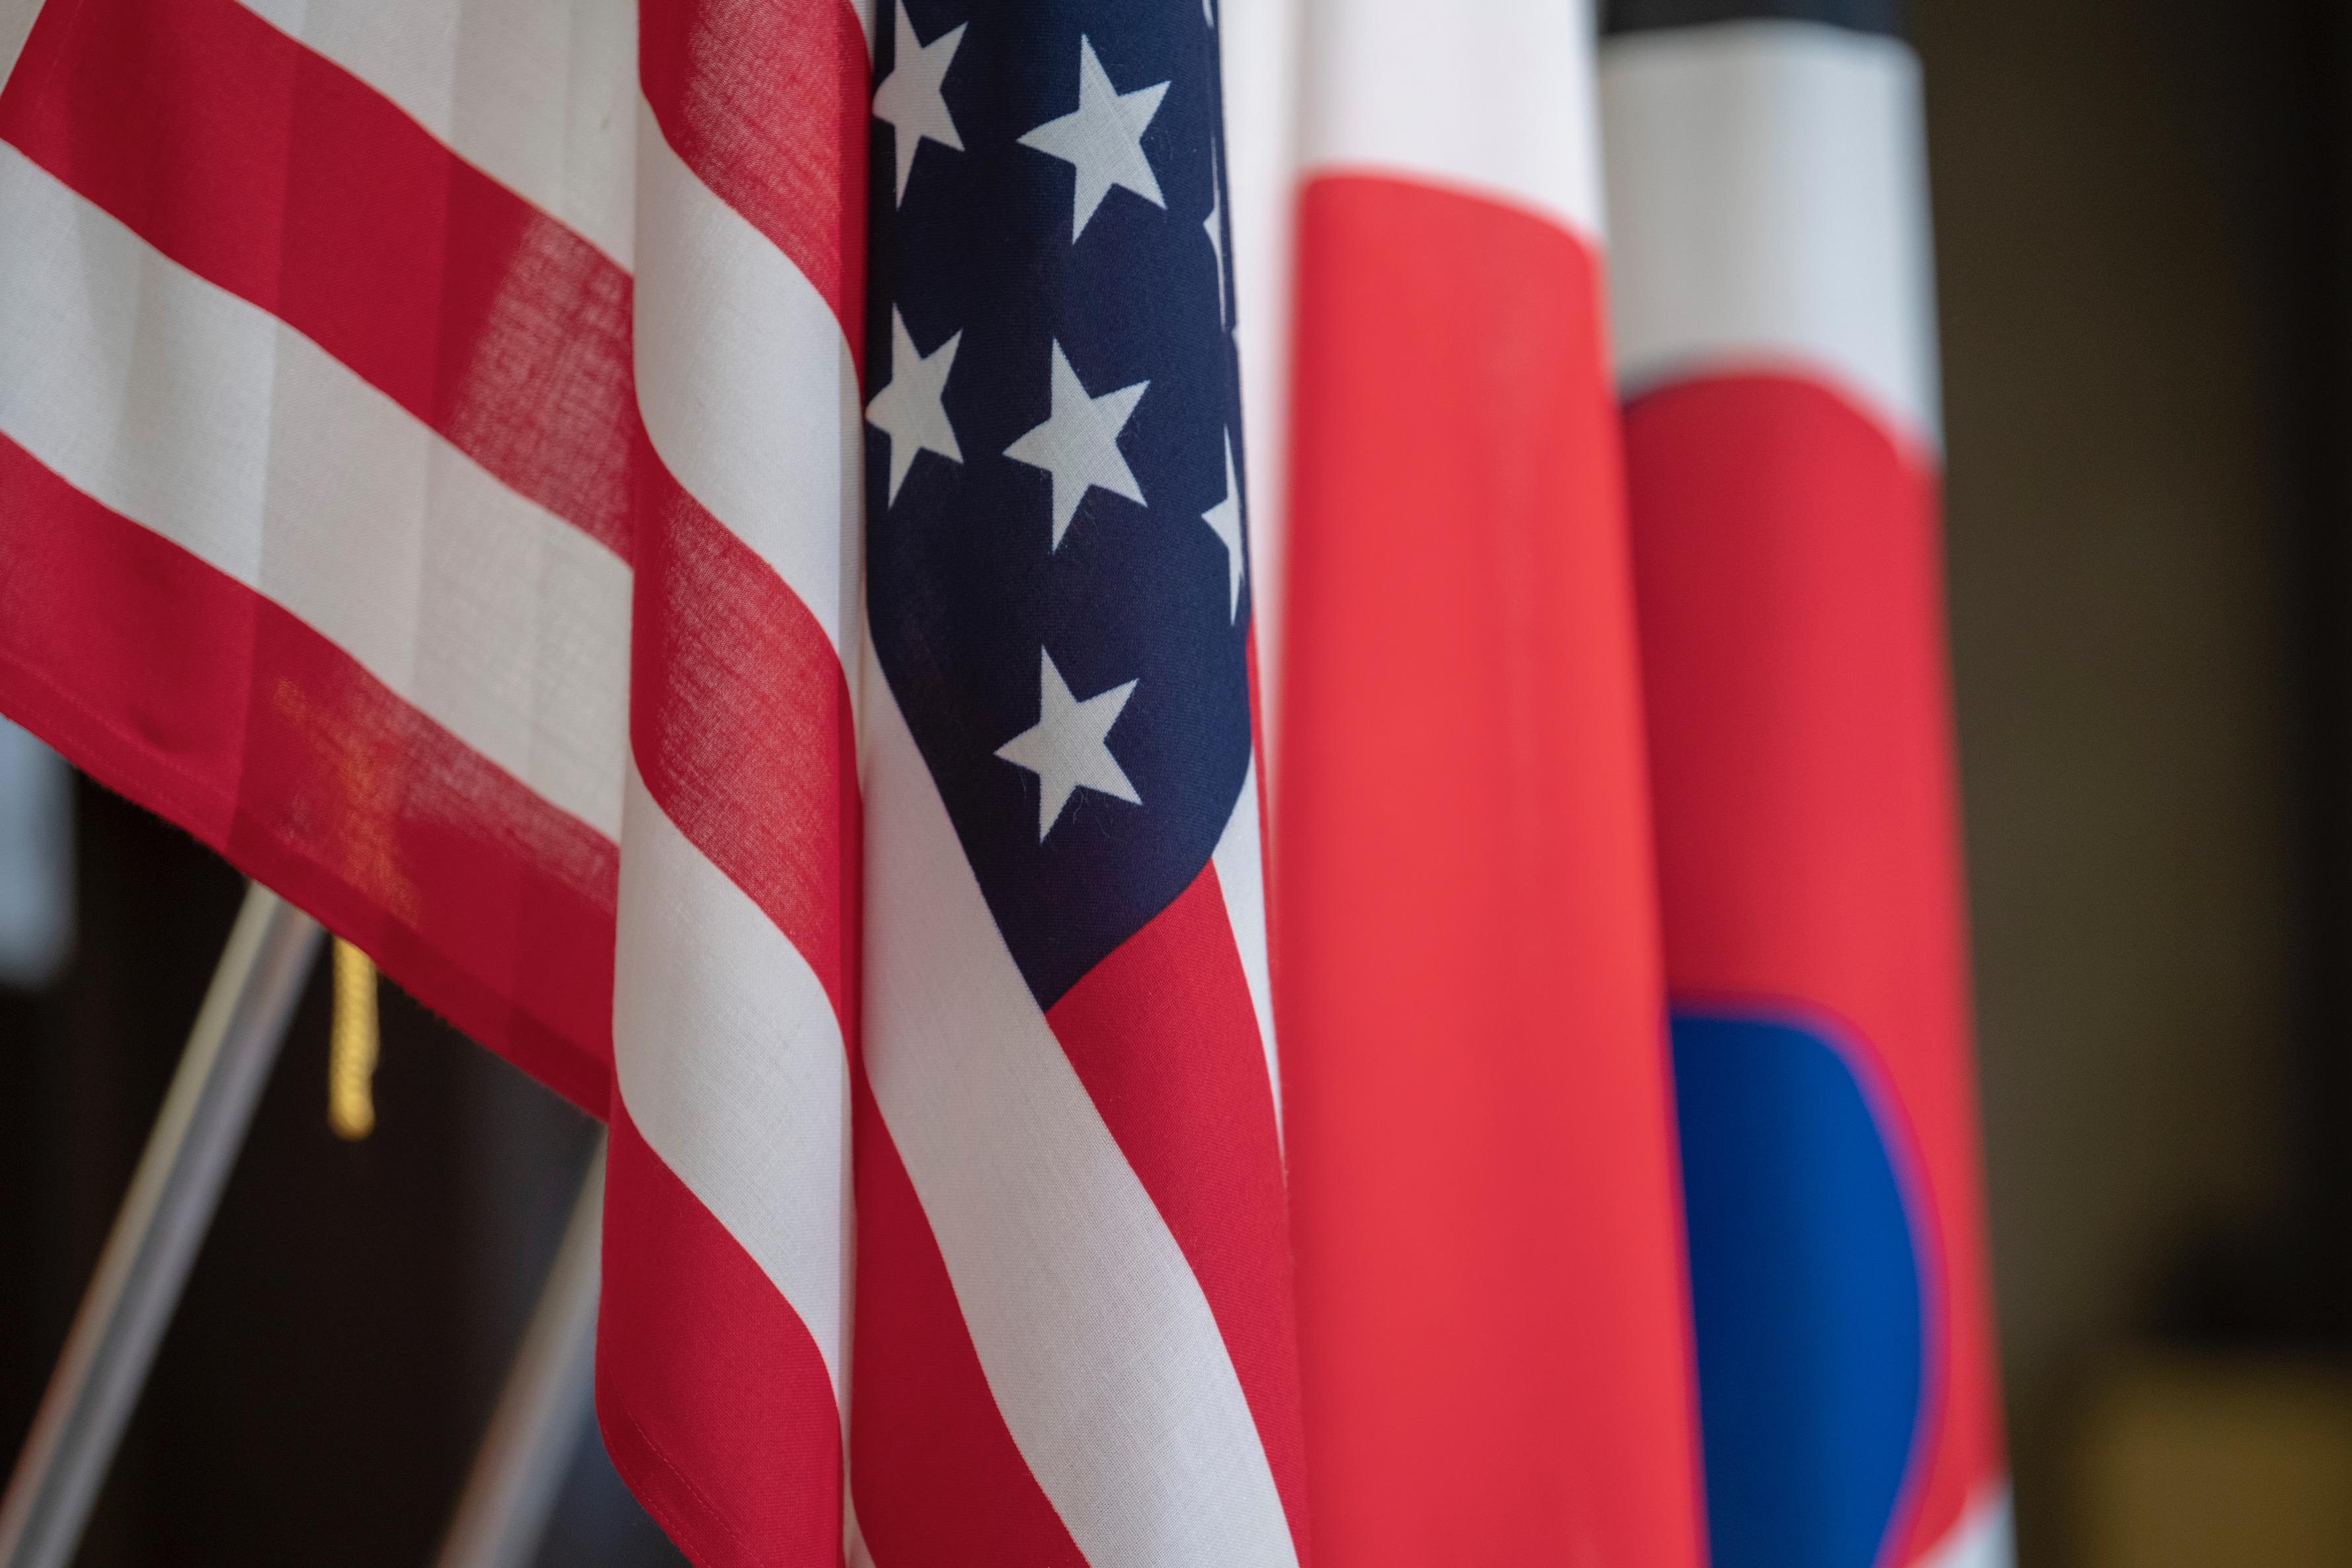 Amerika Birleşik Devletleri, Japonya ve Kore Cumhuriyeti'ni temsil eden bayraklar